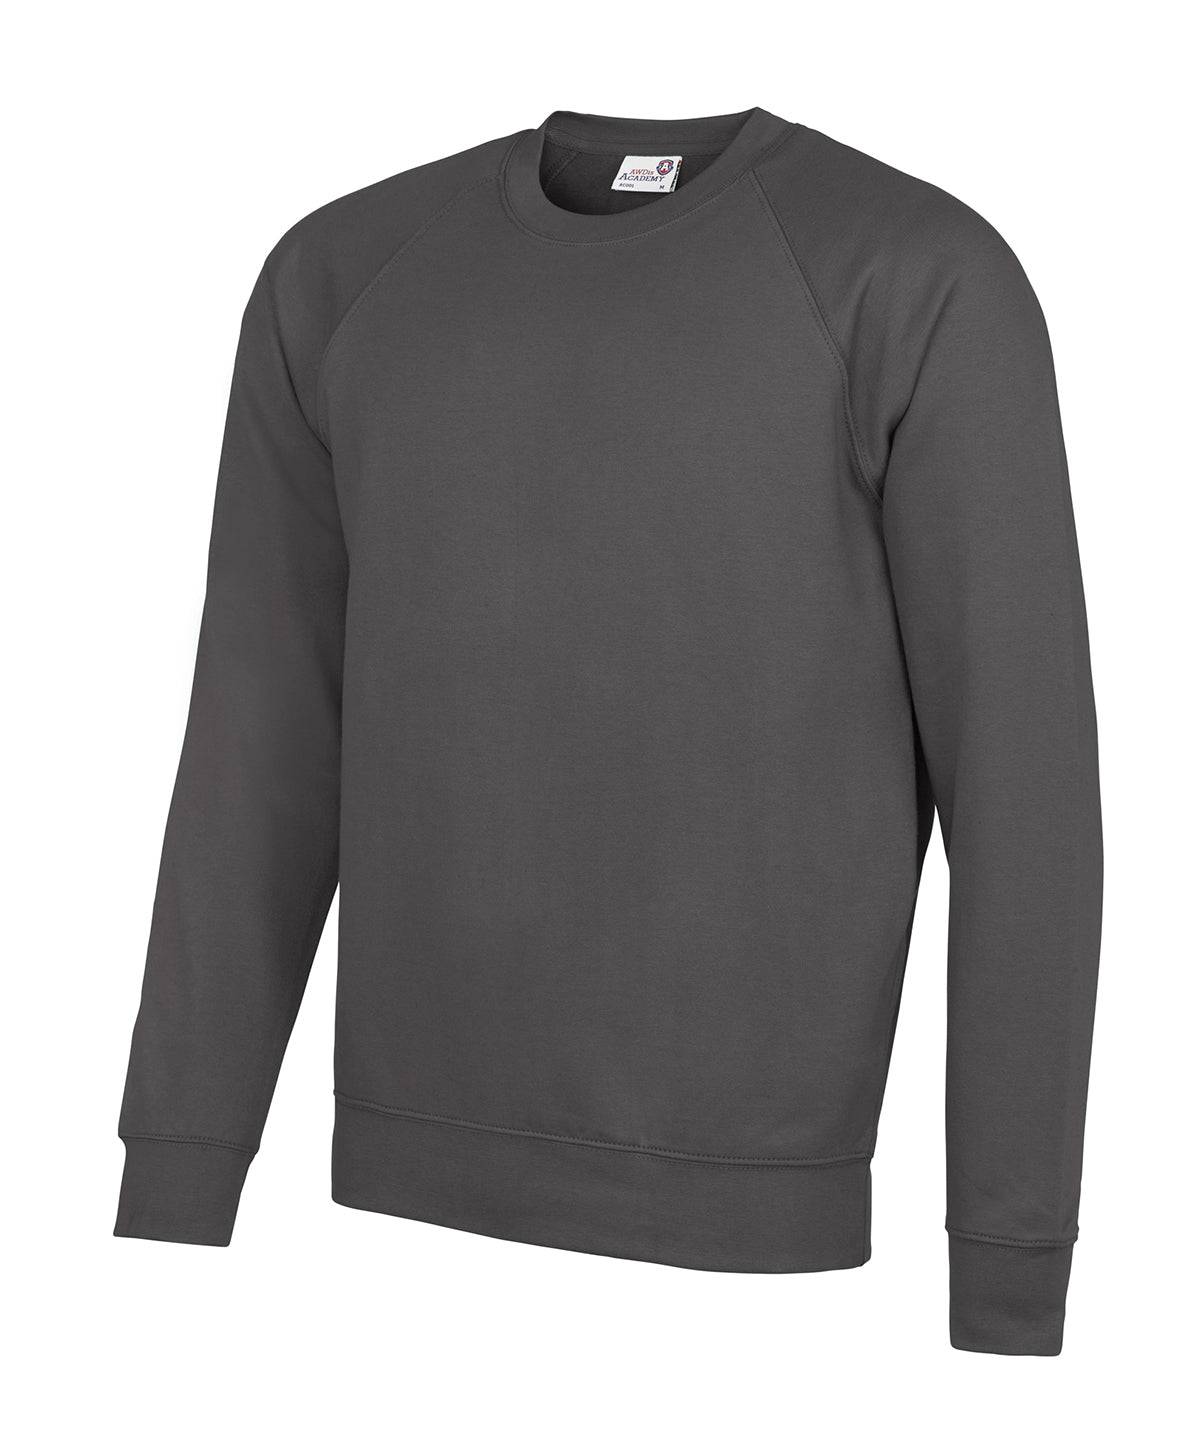 Academy Charcoal - Senior Academy raglan sweatshirt